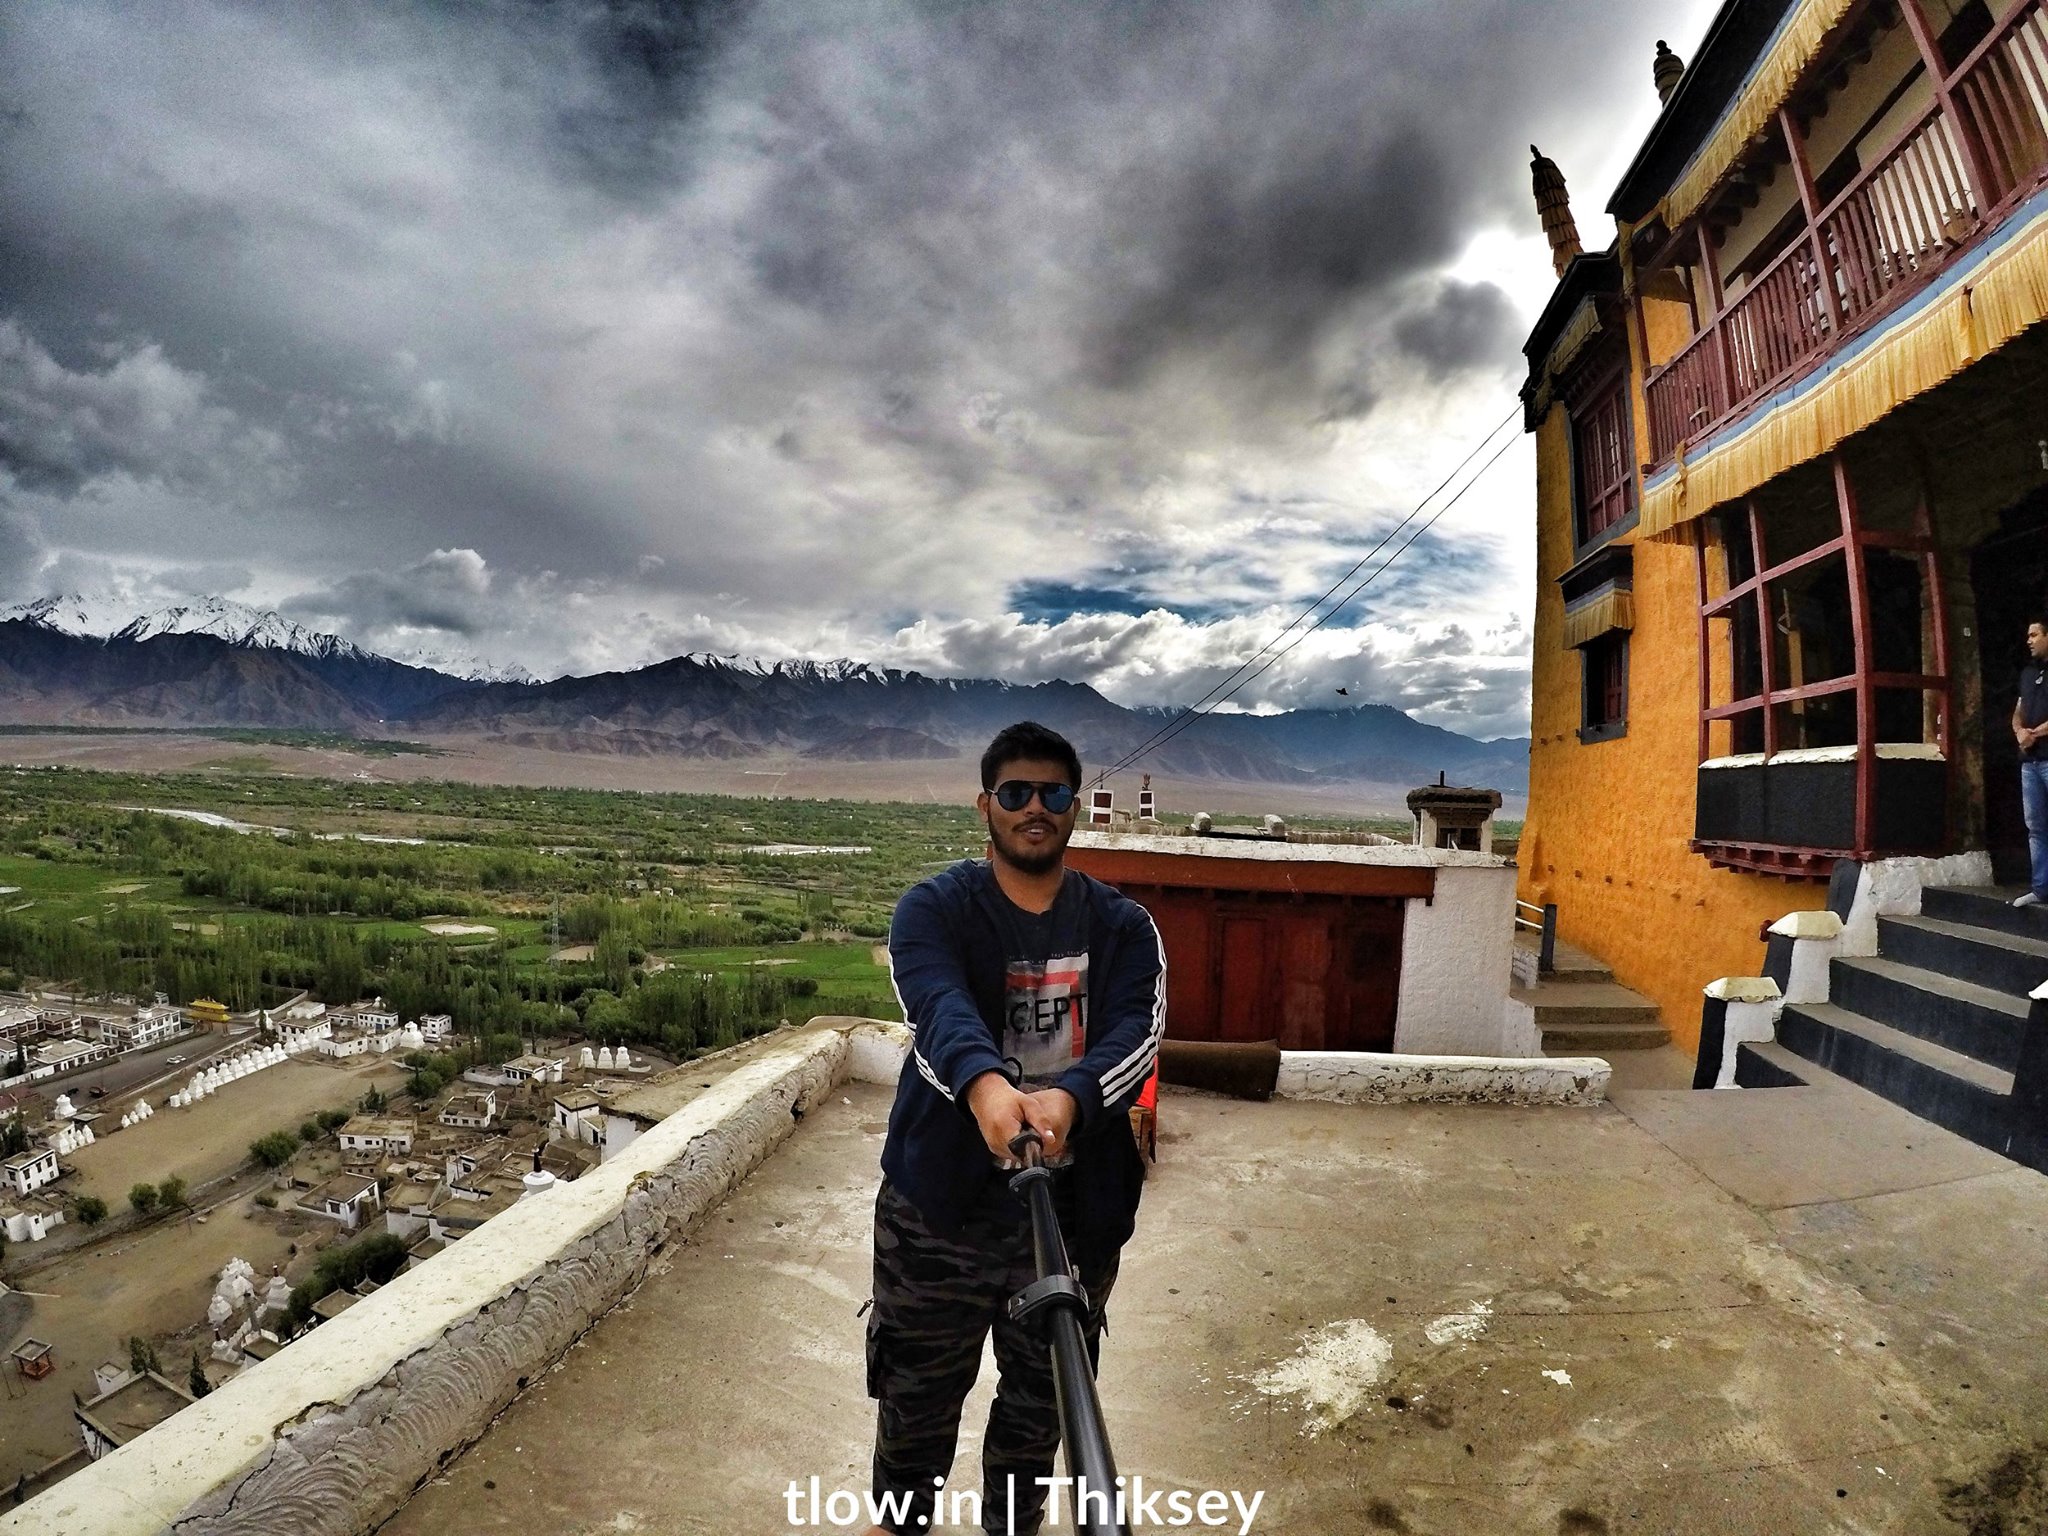 Thiskey monastery ladakh